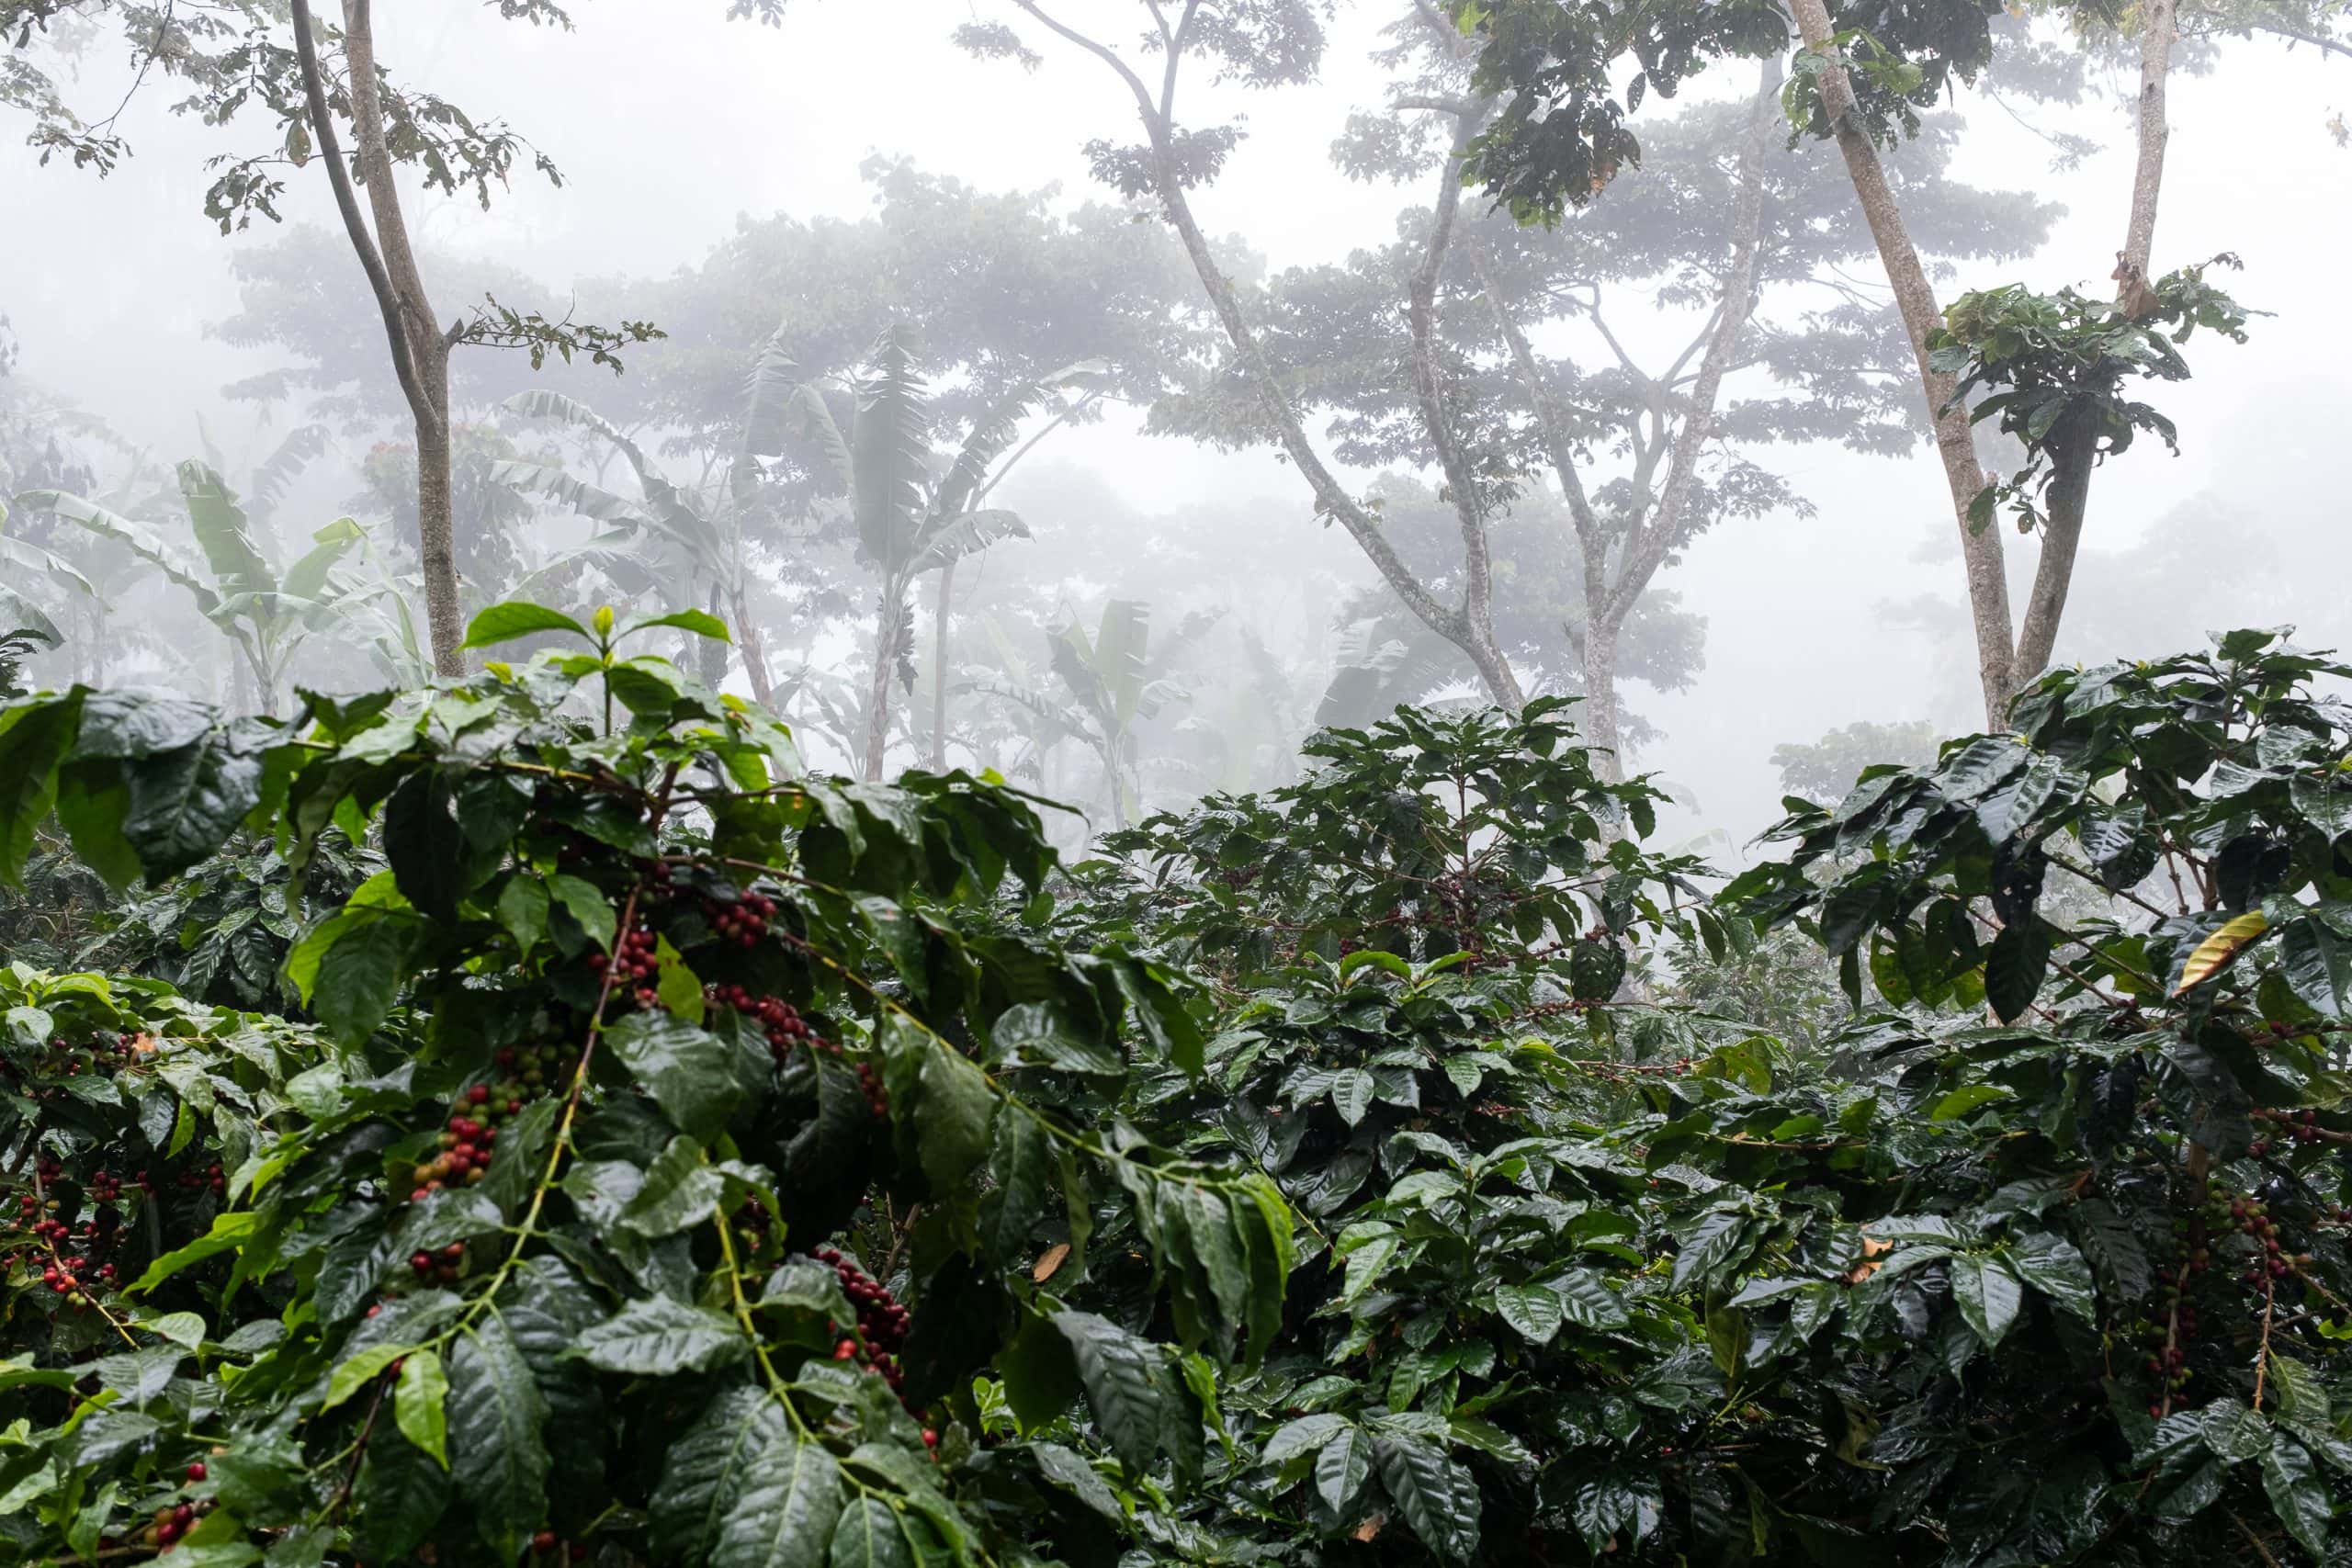 Takto vyzerajú zdravé kávovníky. Rastú v hustom pralese obklopené bohatou faunou a flórou.